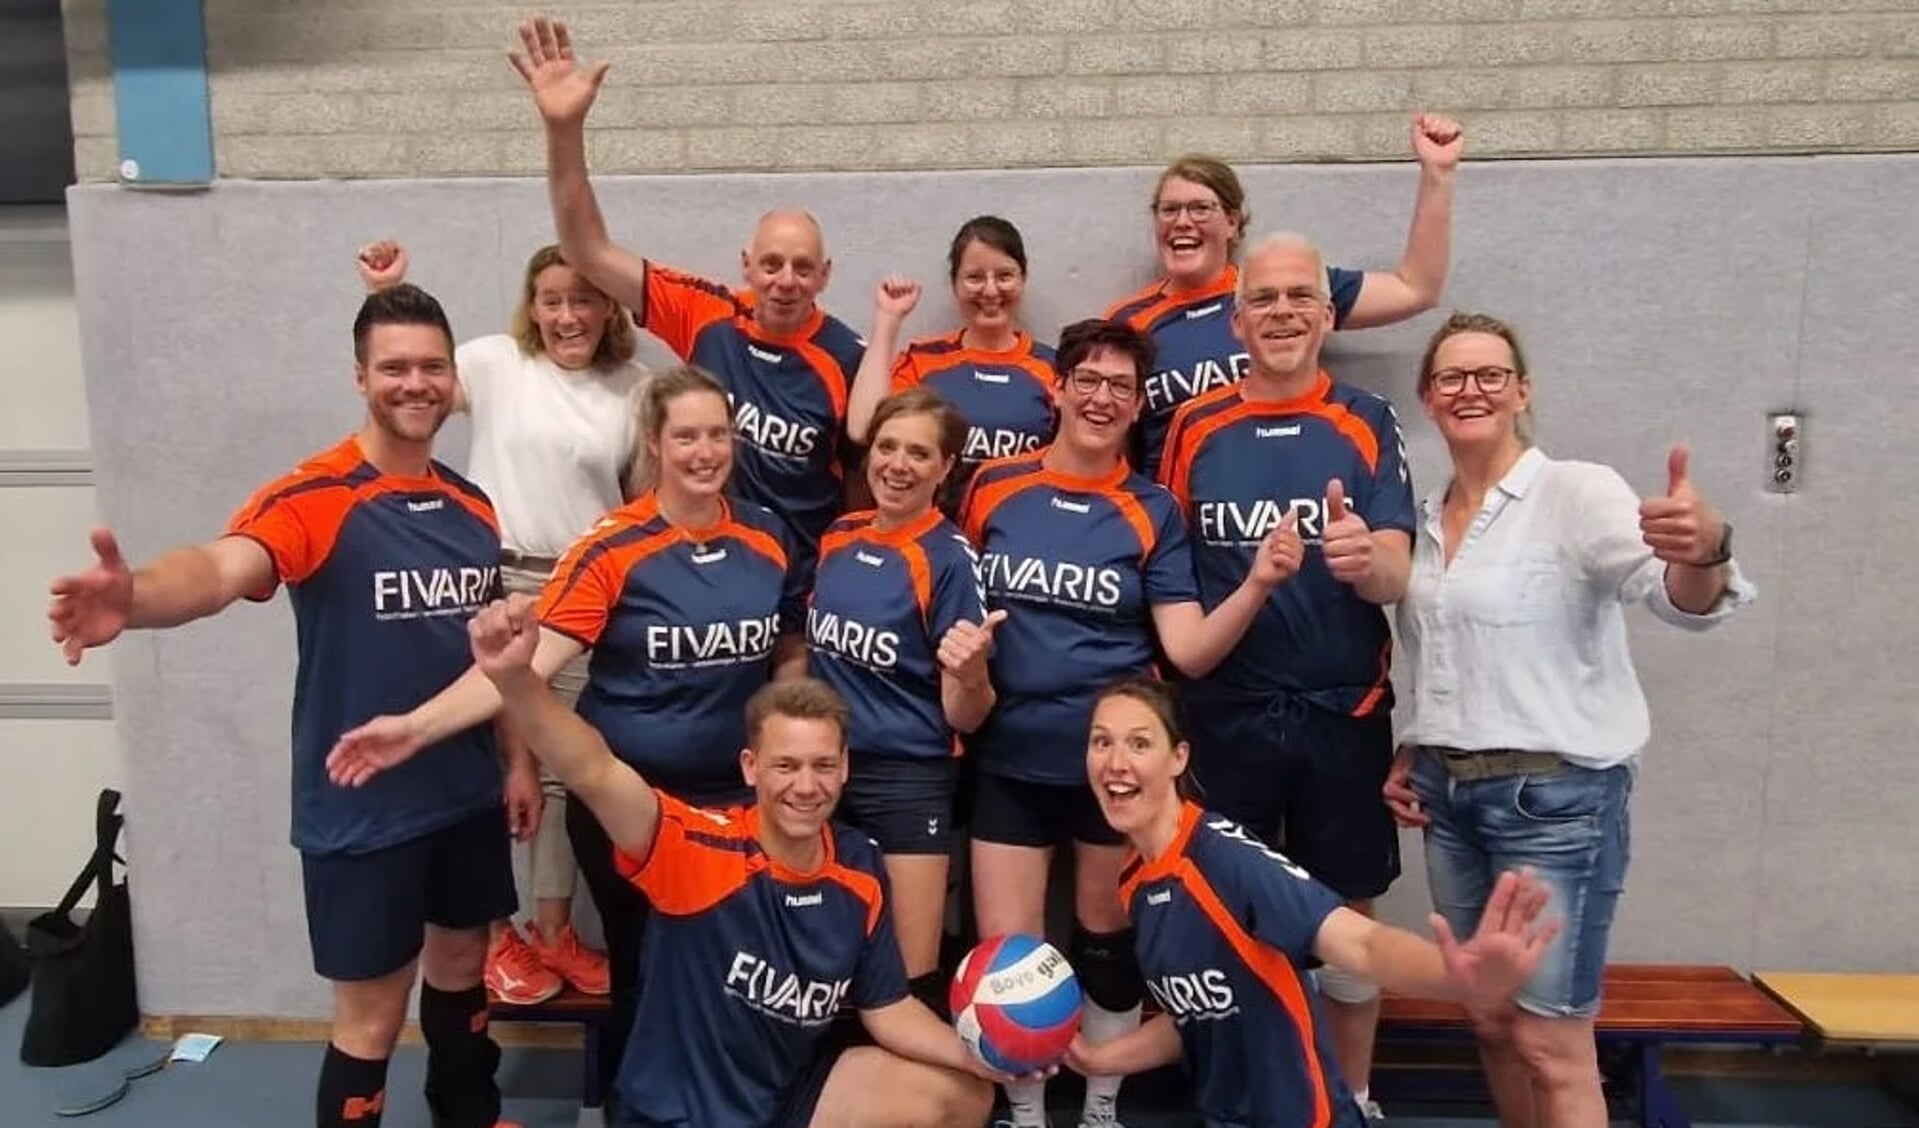 De vice-kampioenen recreatief volleybal van Nederland